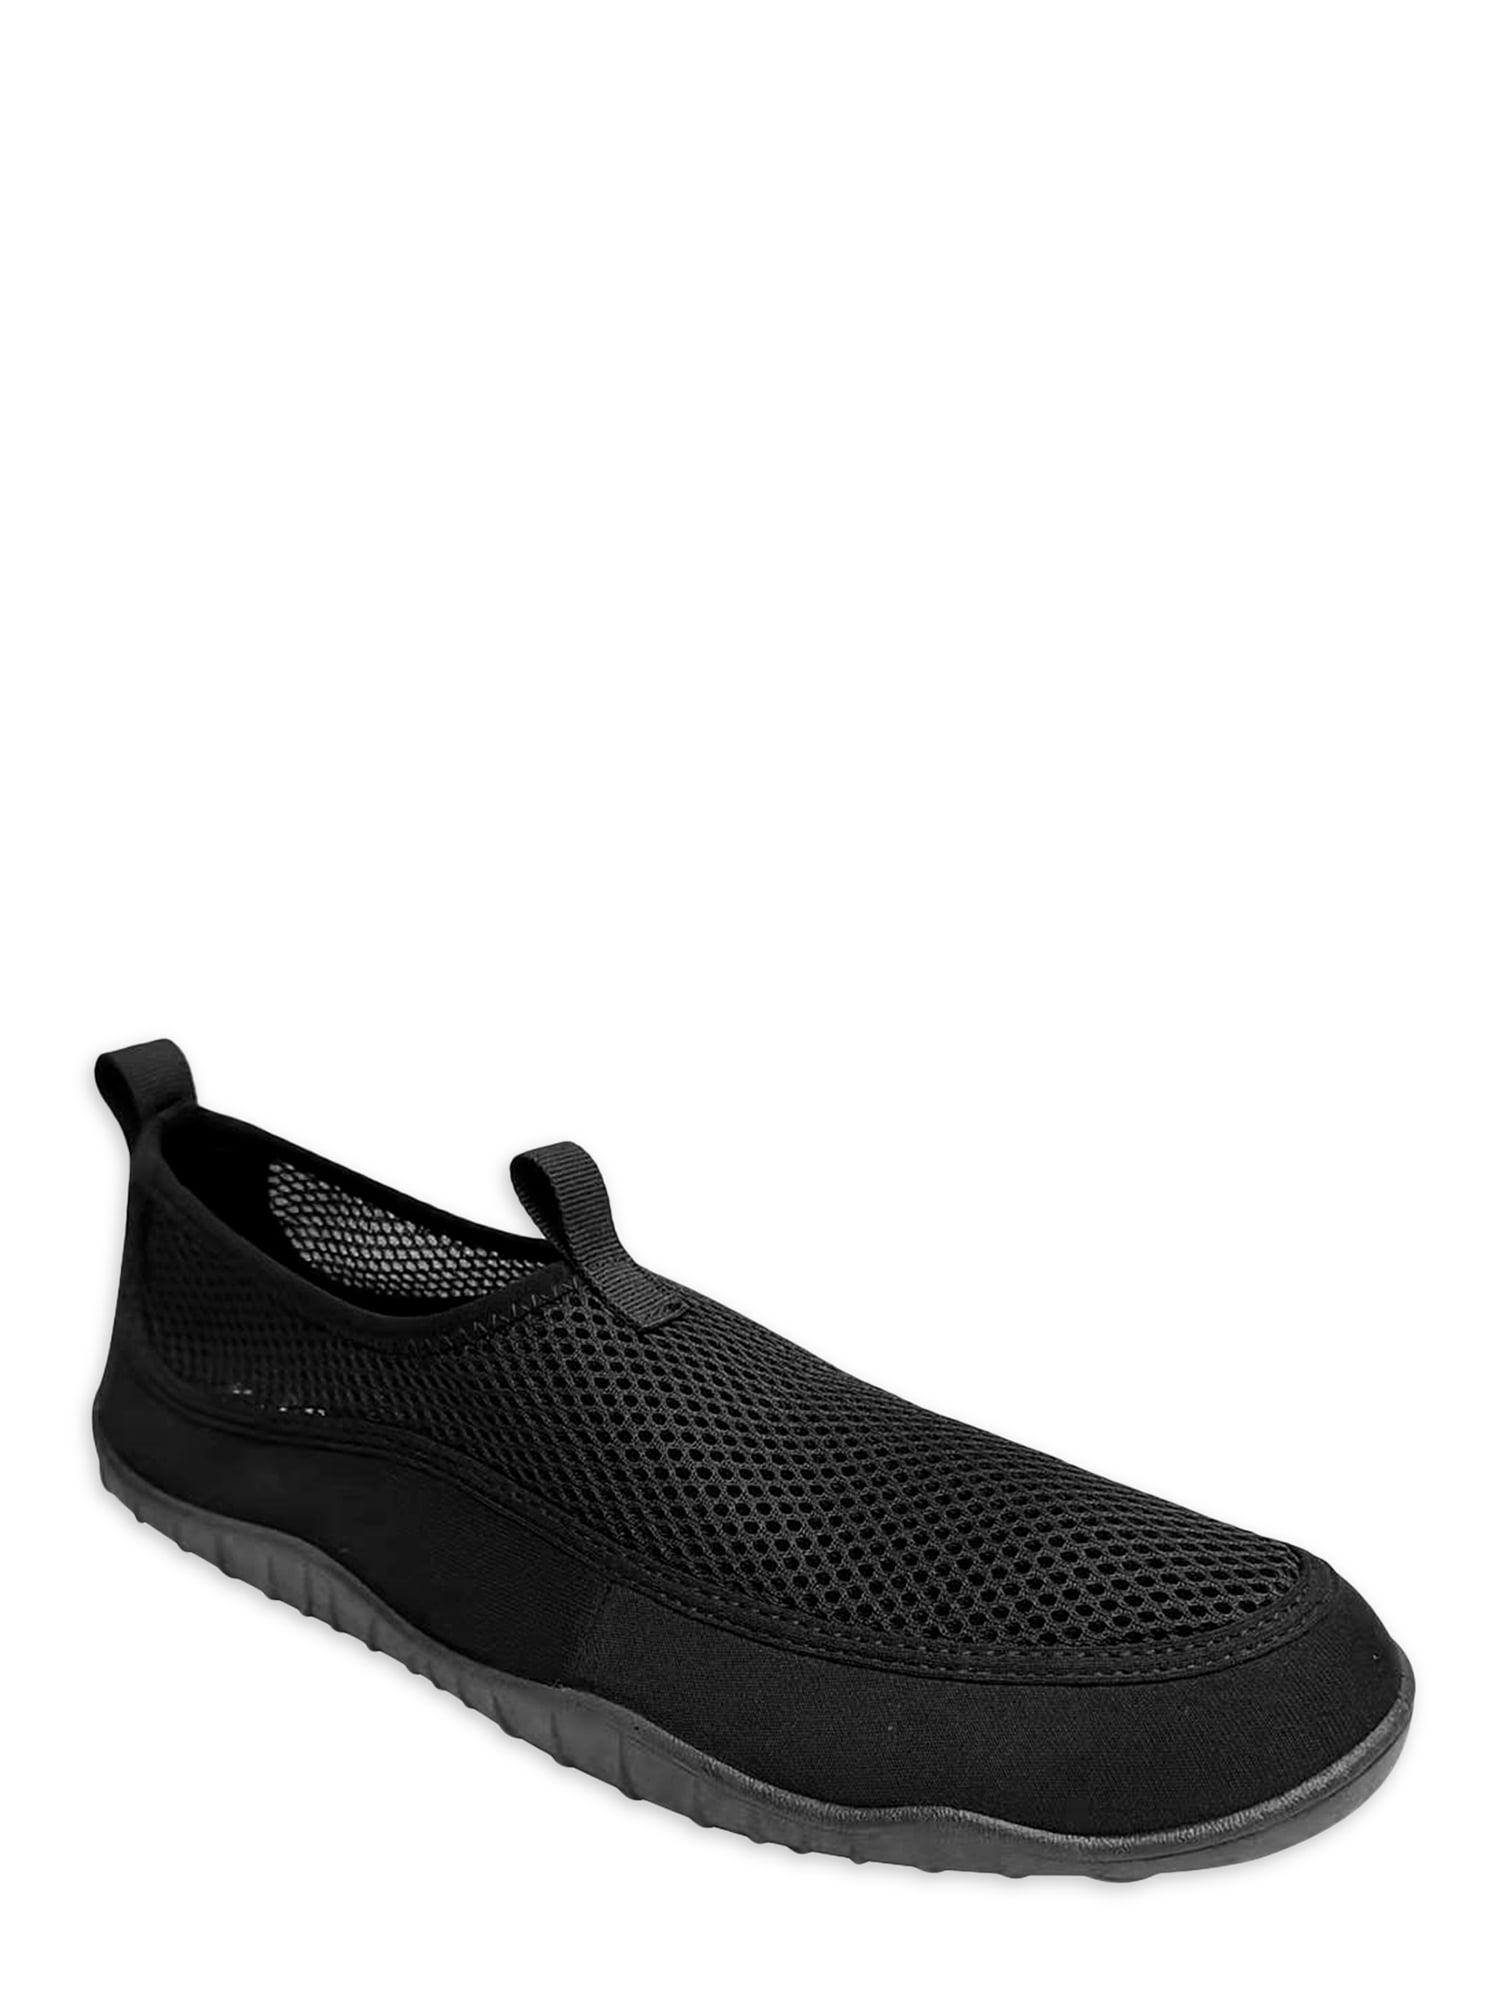 Athletic Men's Aqua Sock Beach Shoes - Walmart.com